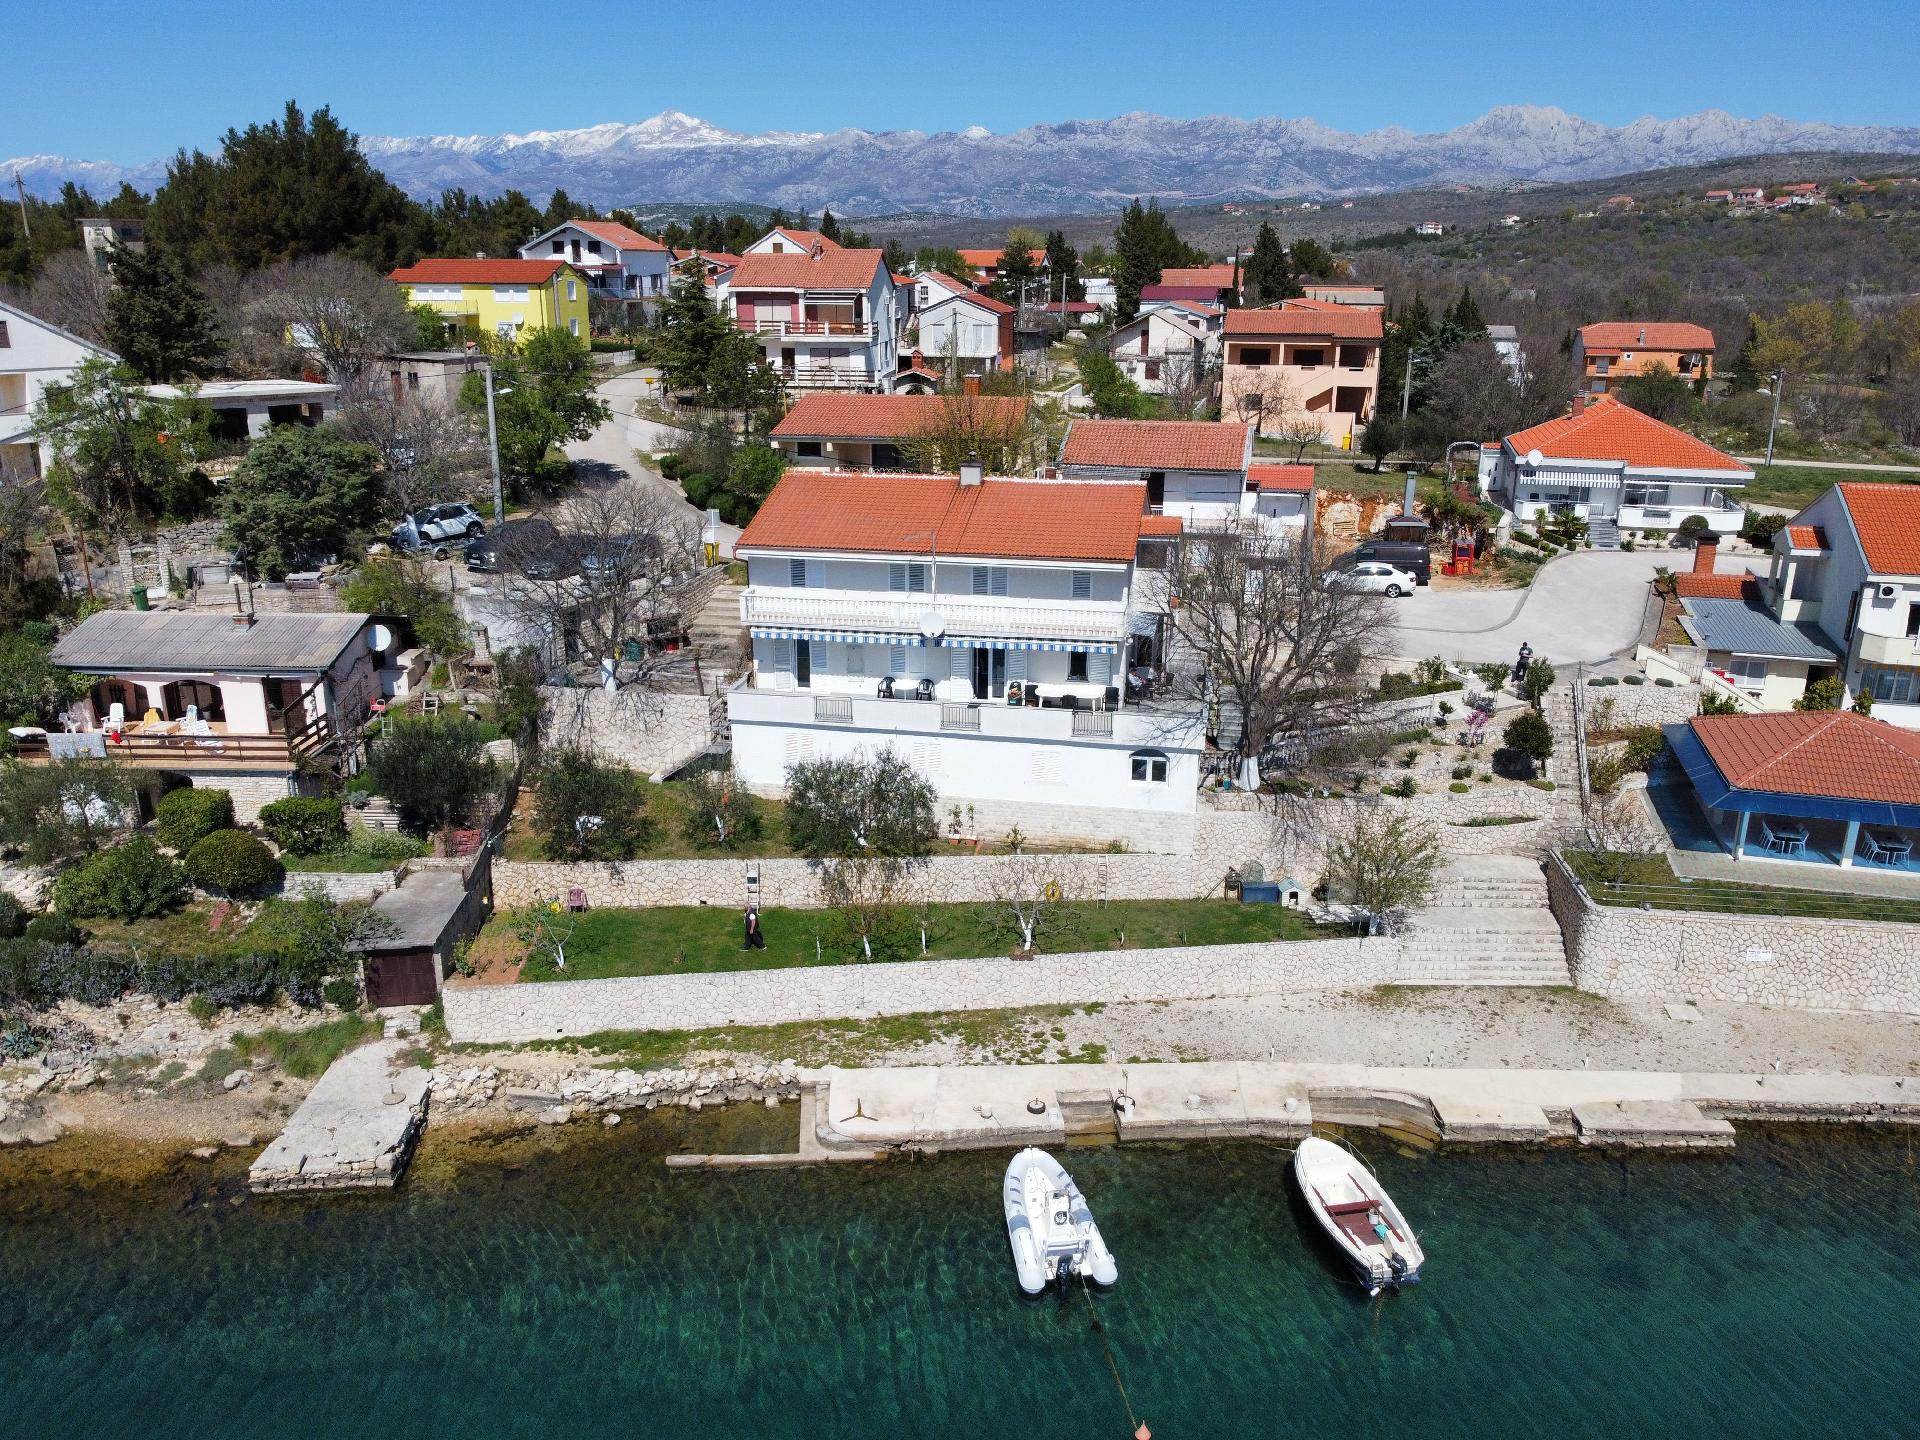 Ferienwohnung für 8 Personen ca. 120 m²  Ferienhaus in Dalmatien